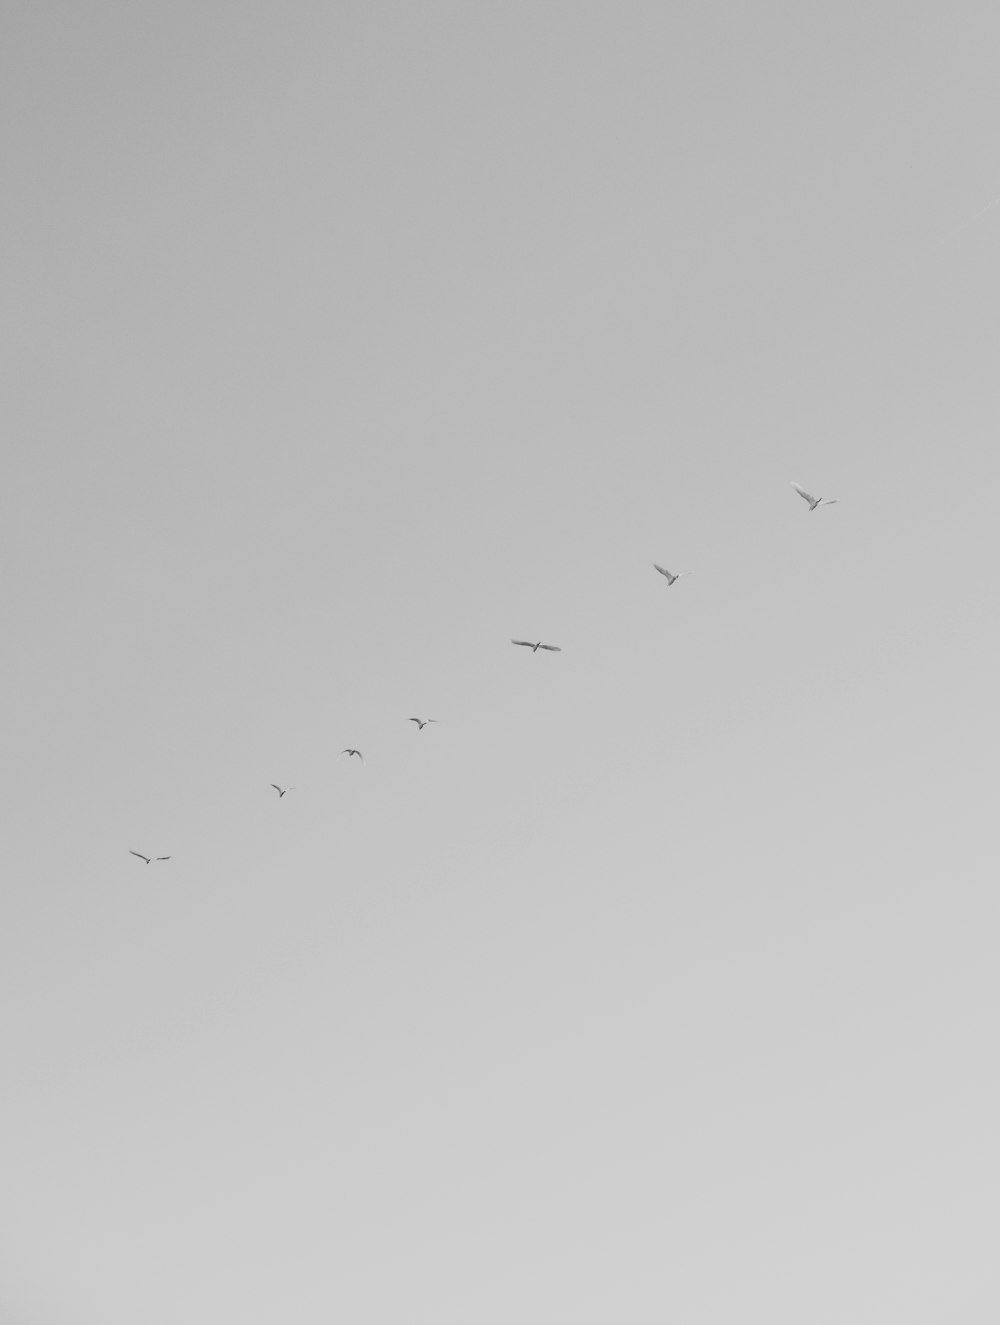 Uno stormo di uccelli che volano attraverso un cielo grigio